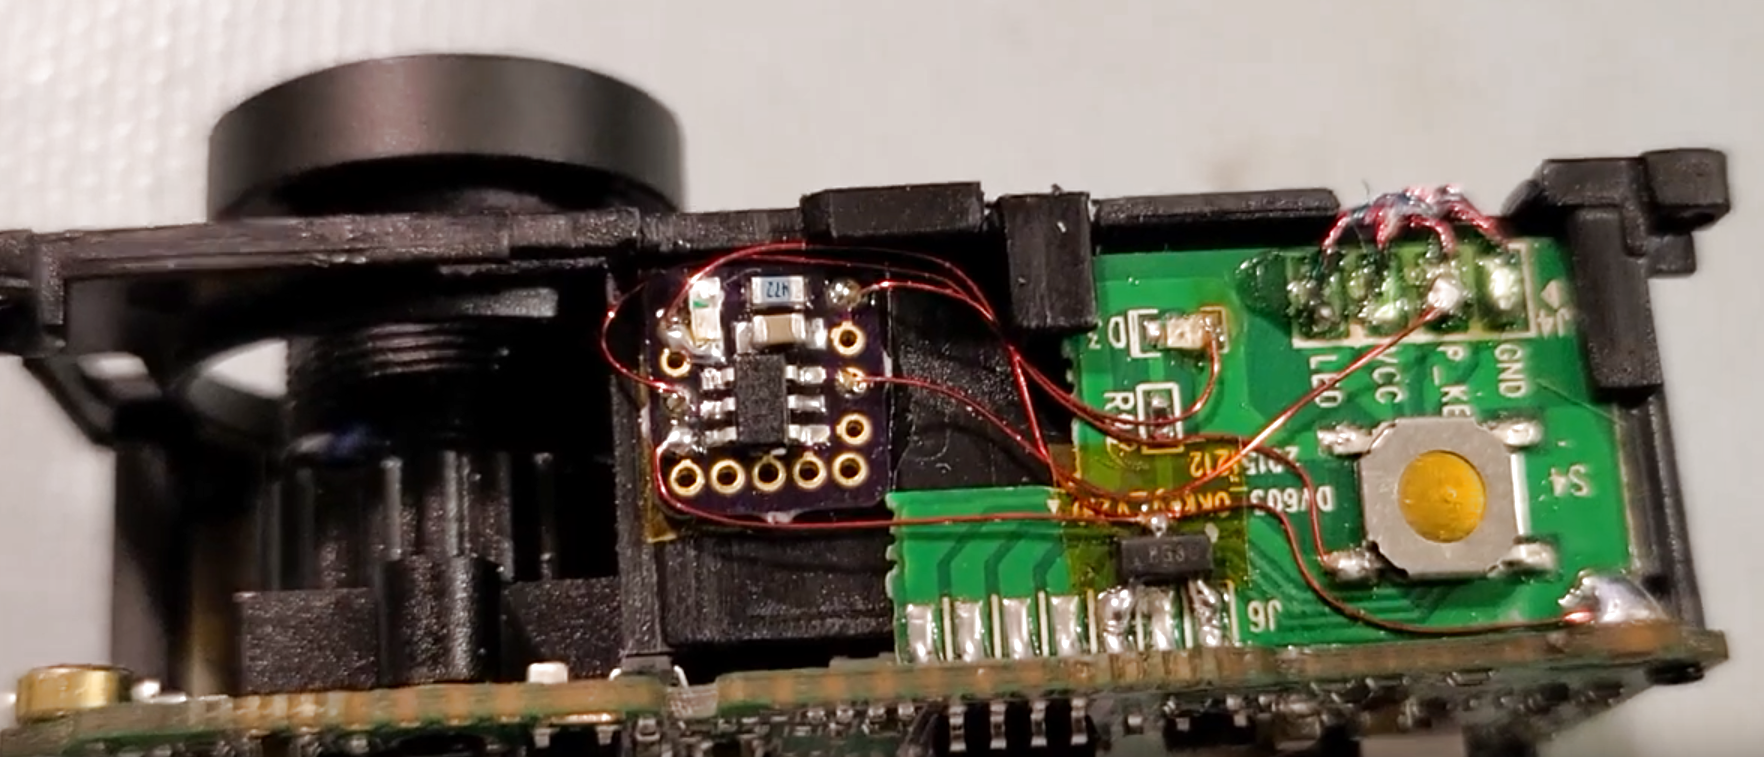 Hacking A Cheap Action Cam Into A Dashcam With A Microcontroller